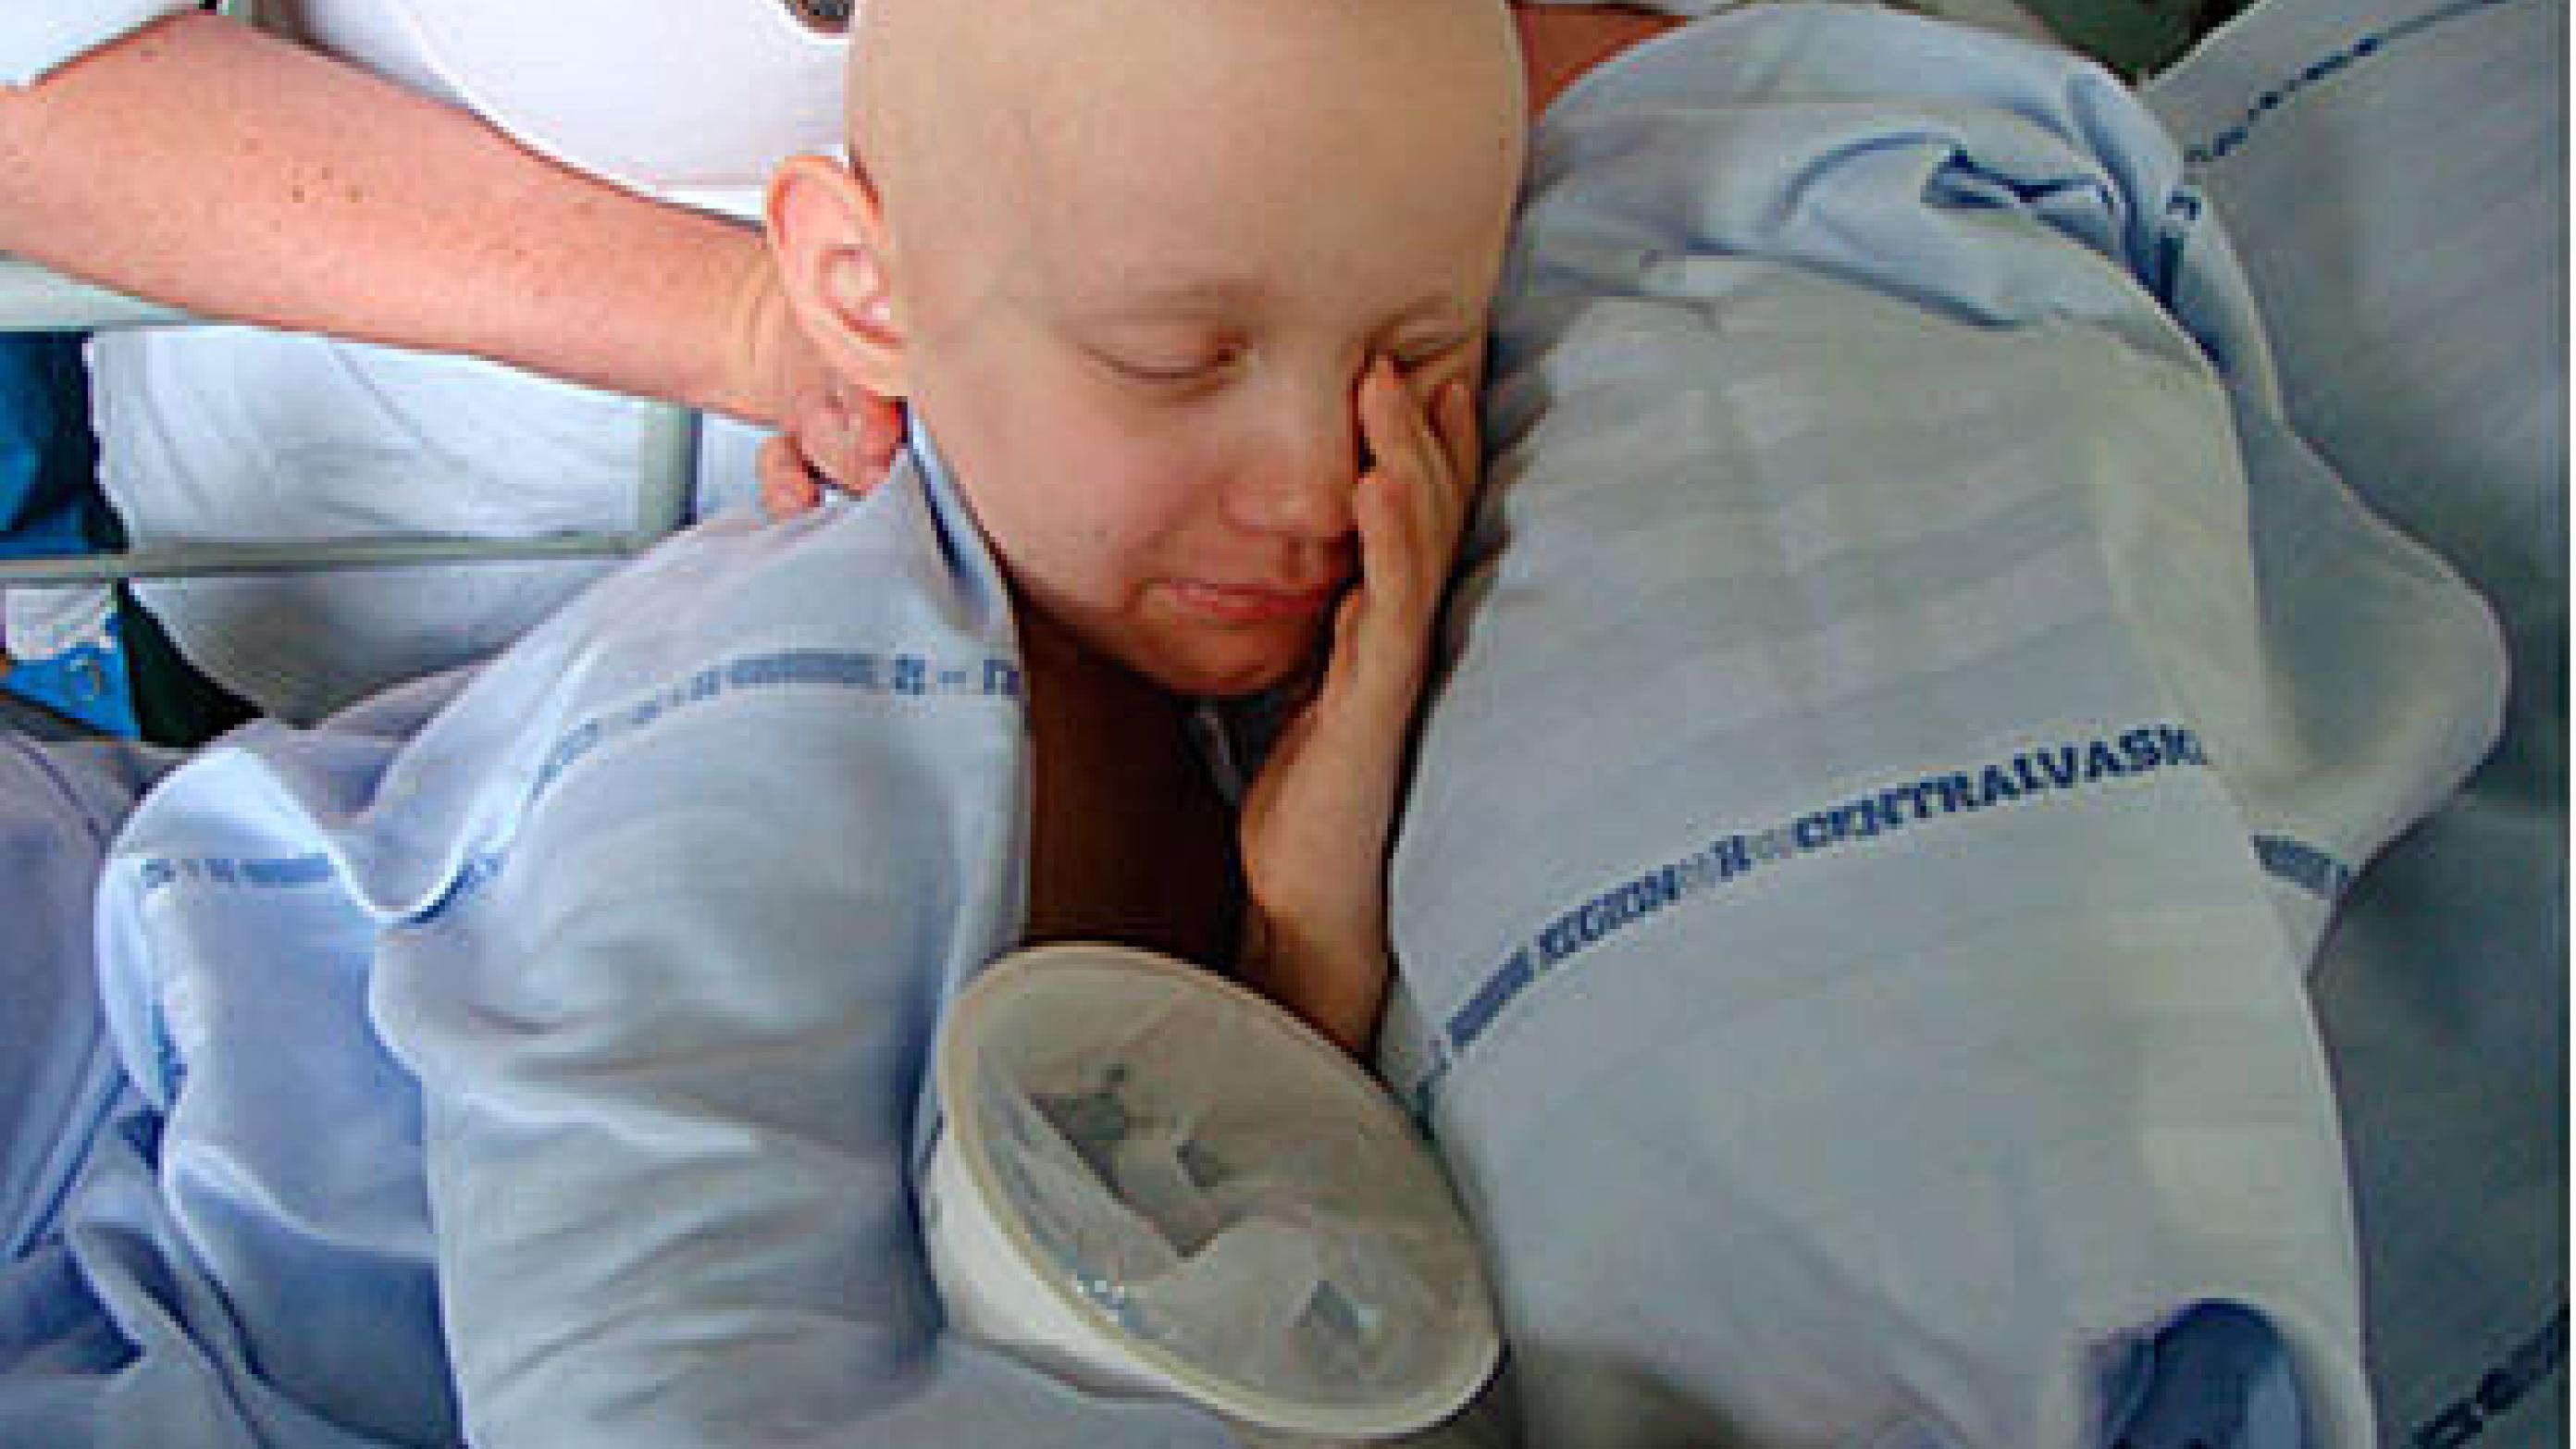 Kvalme og opkastning er dominerende bivirkninger af kemoterapi hos børn og unge med kræft og har store fysiske og psykiske konsekvenser. 